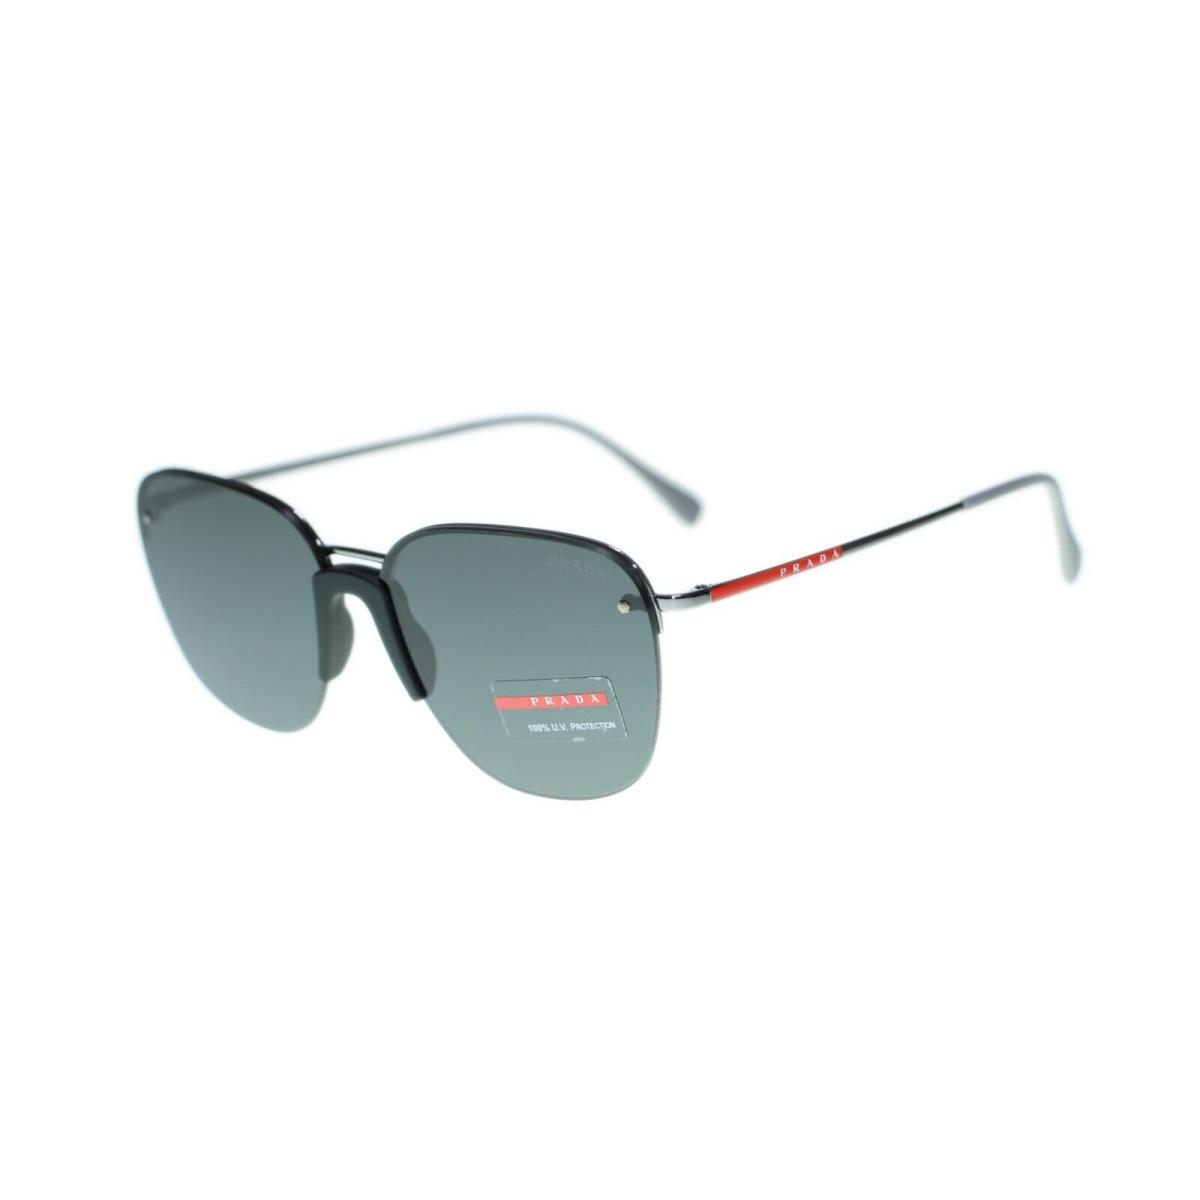 Prada Linea Rossa PS53US Lifestyle Metal Frame Sunglasses - Gunmetal Frame, Grey Lens